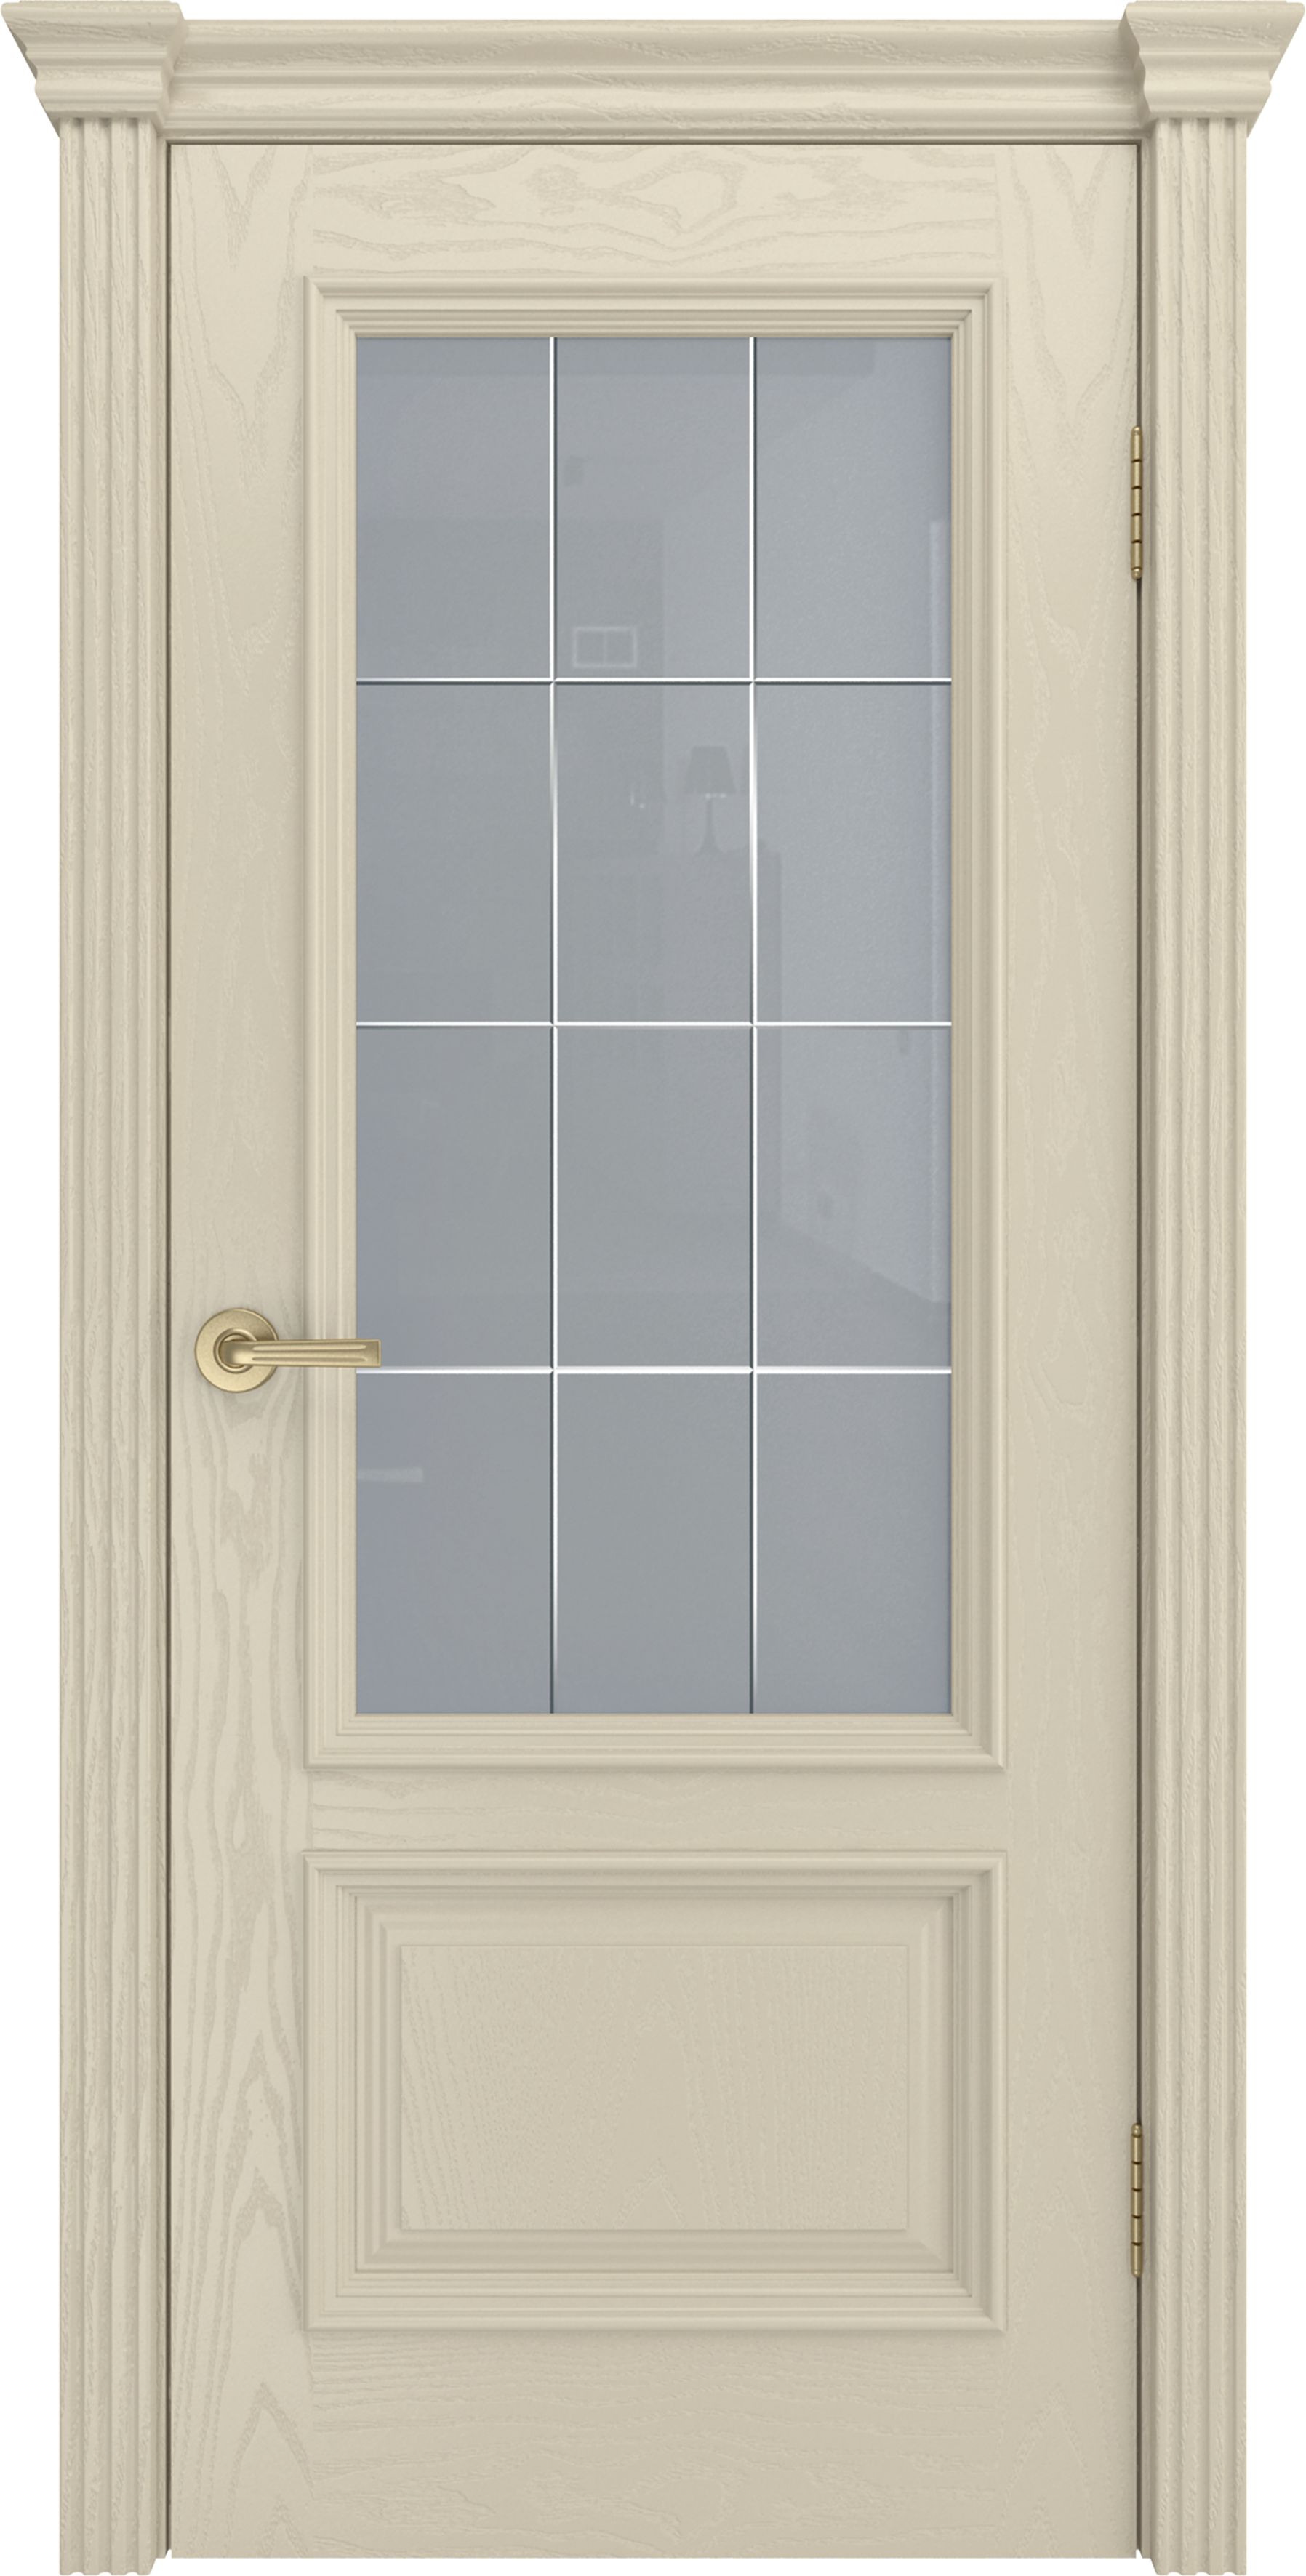 Двери шпонированные ТЕКОНА Фрейм 07 со стеклом Крем размер 200 х 60 см. артикул F0000069810